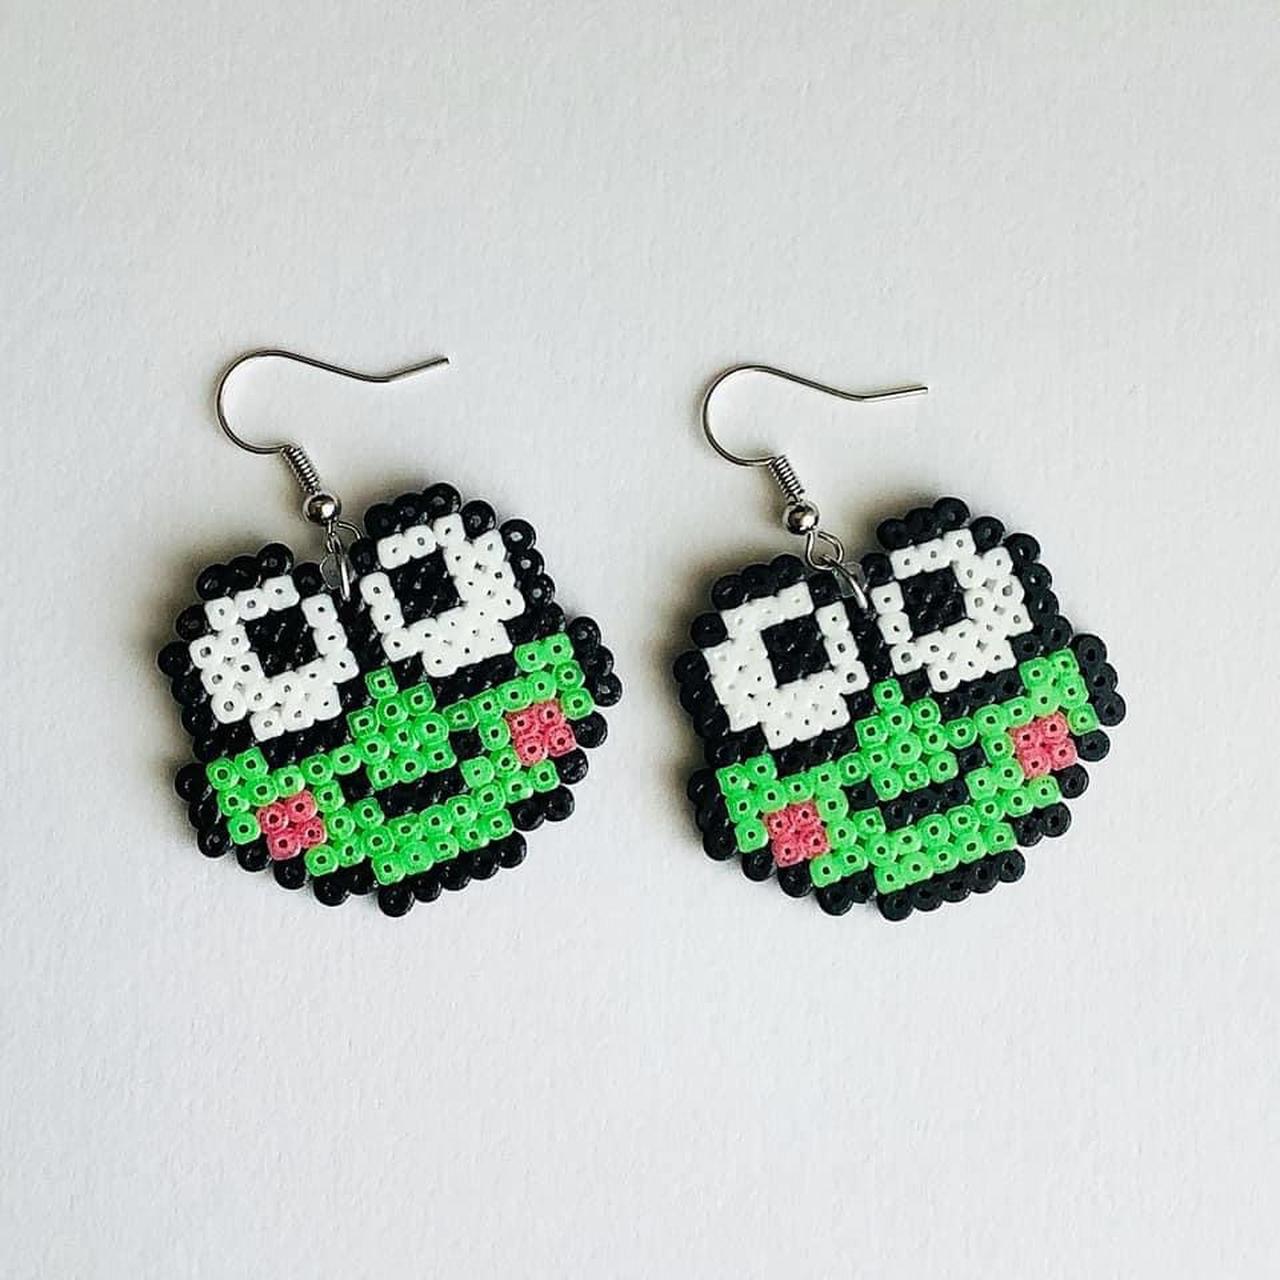 Keroppi frog earrings. These are custom made so... - Depop